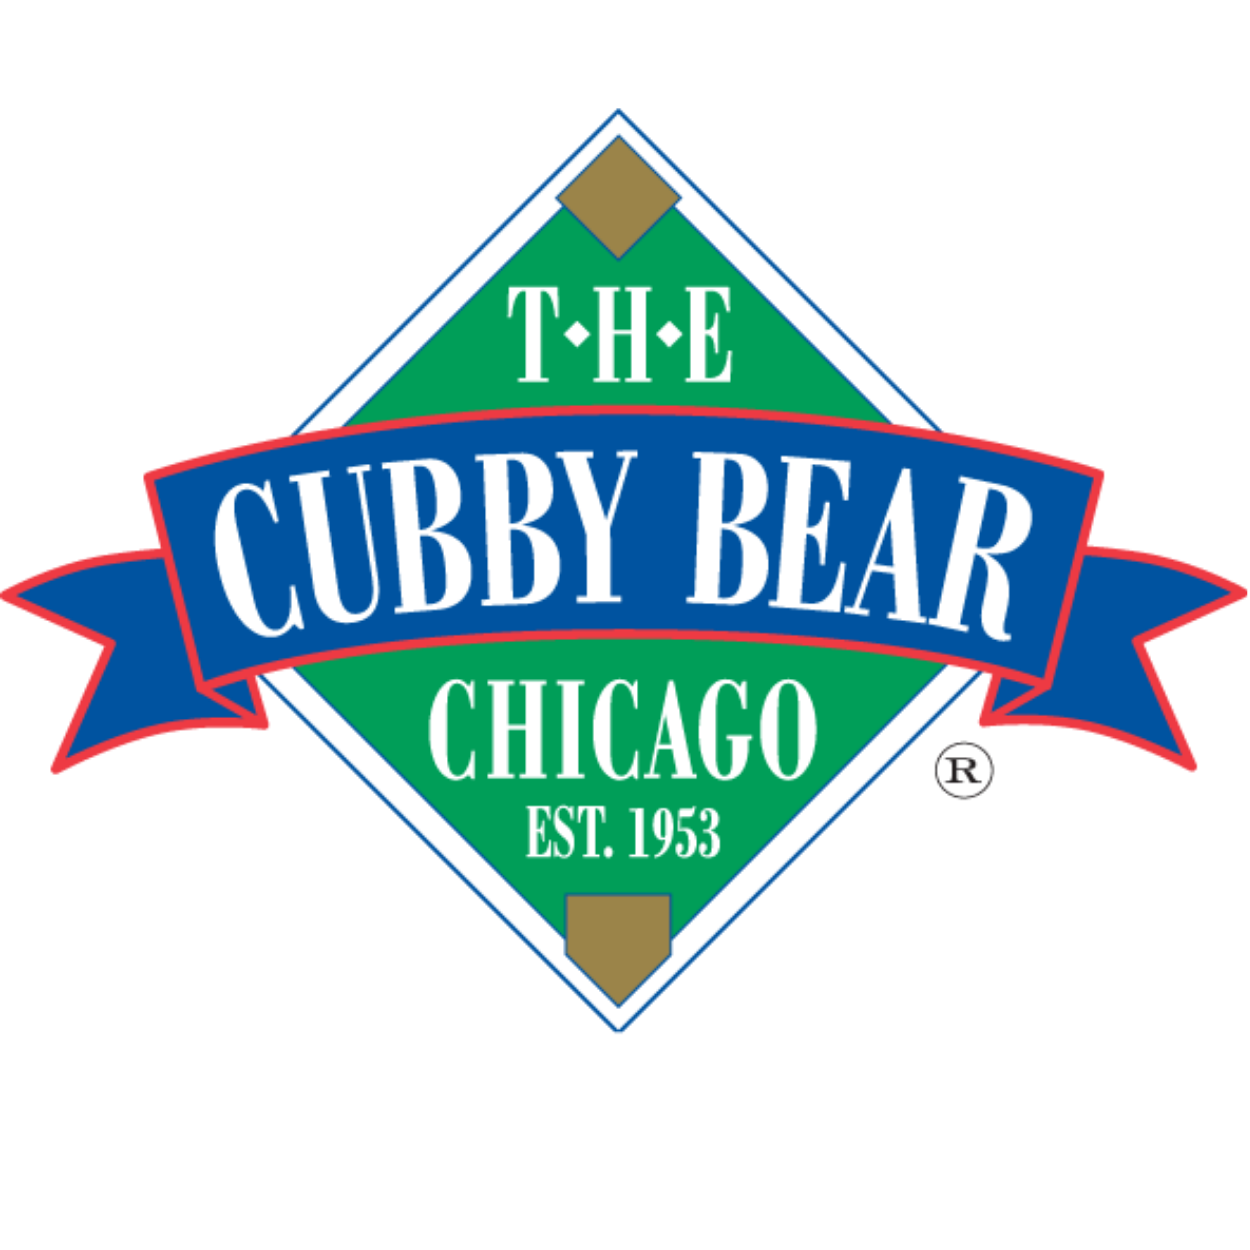 THE CUBBY BEAR